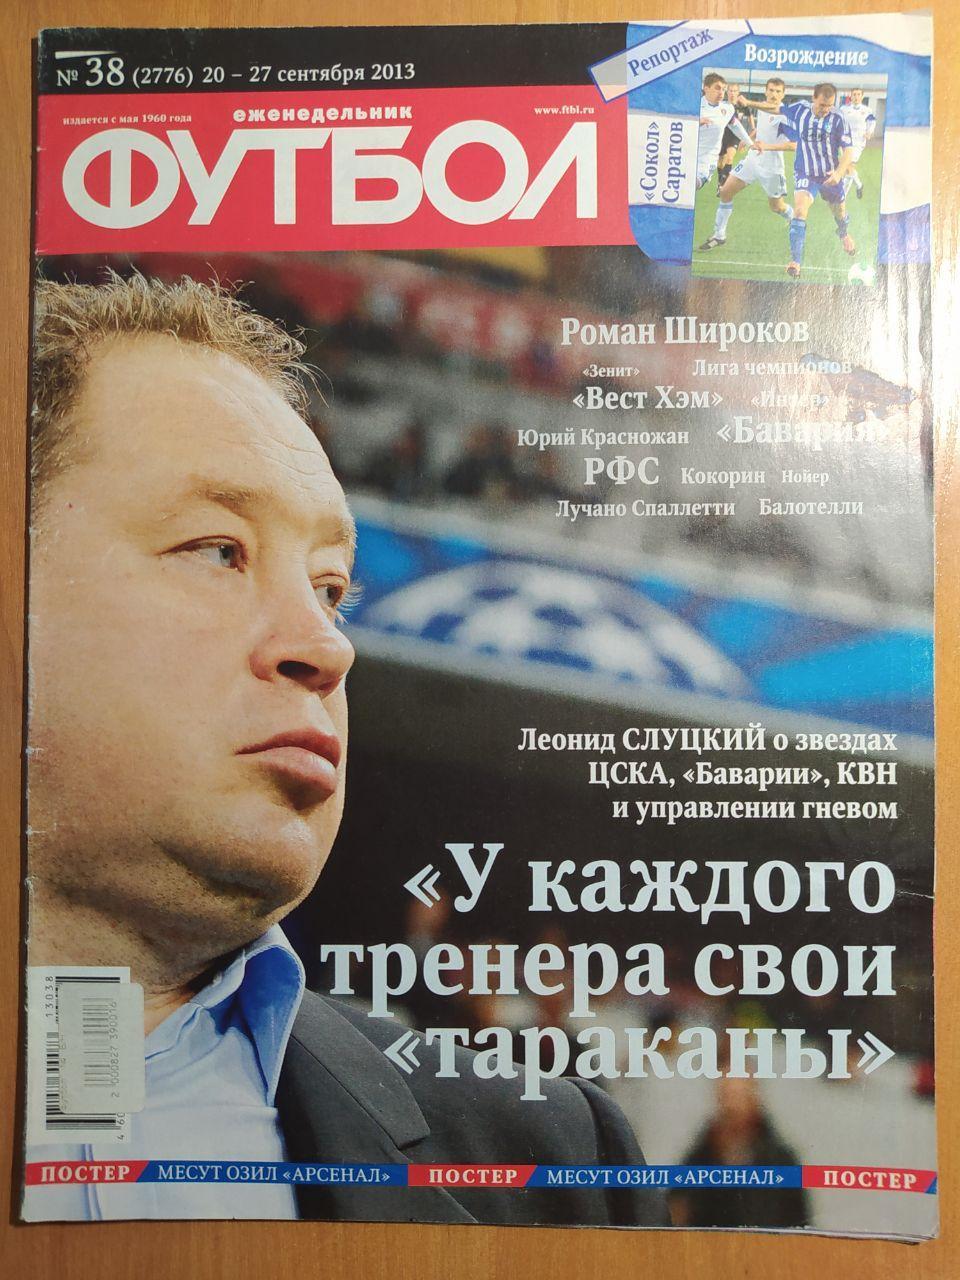 Еженедельник Футбол российское издание 2013 год № 38